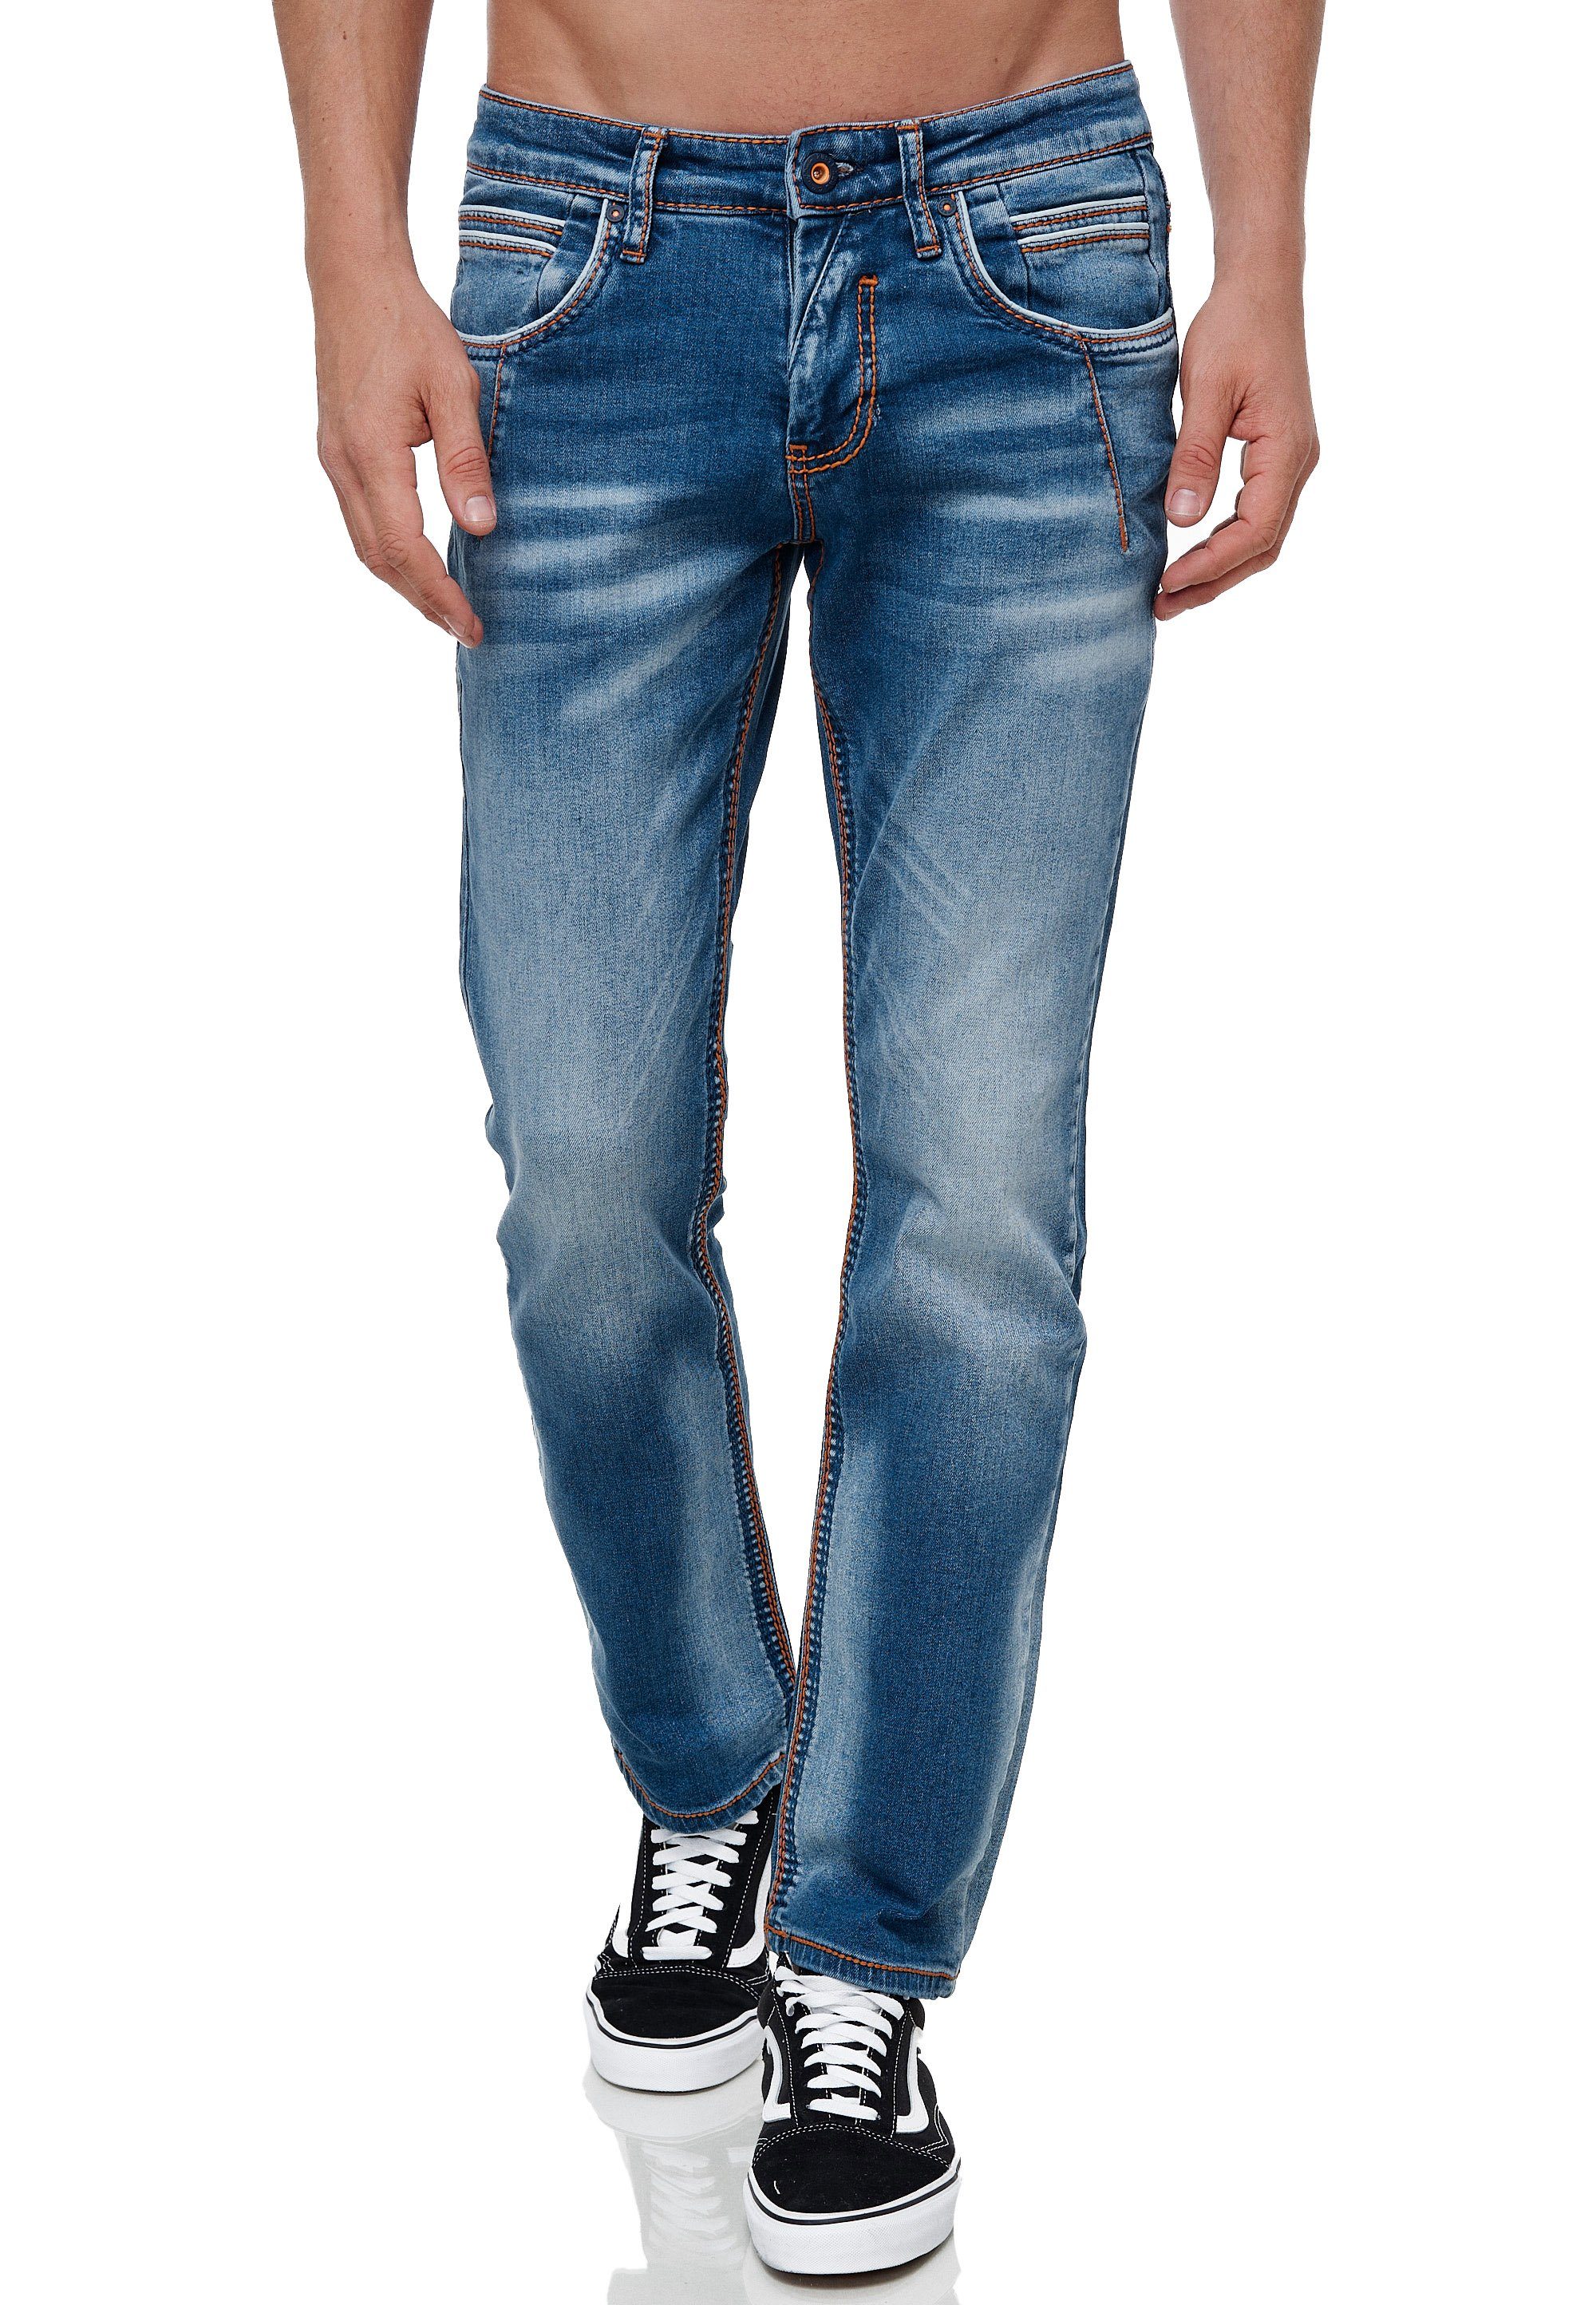 Rusty Neal Straight-Jeans NEW YORK 51 mit angesagten Ziernähten | Straight-Fit Jeans